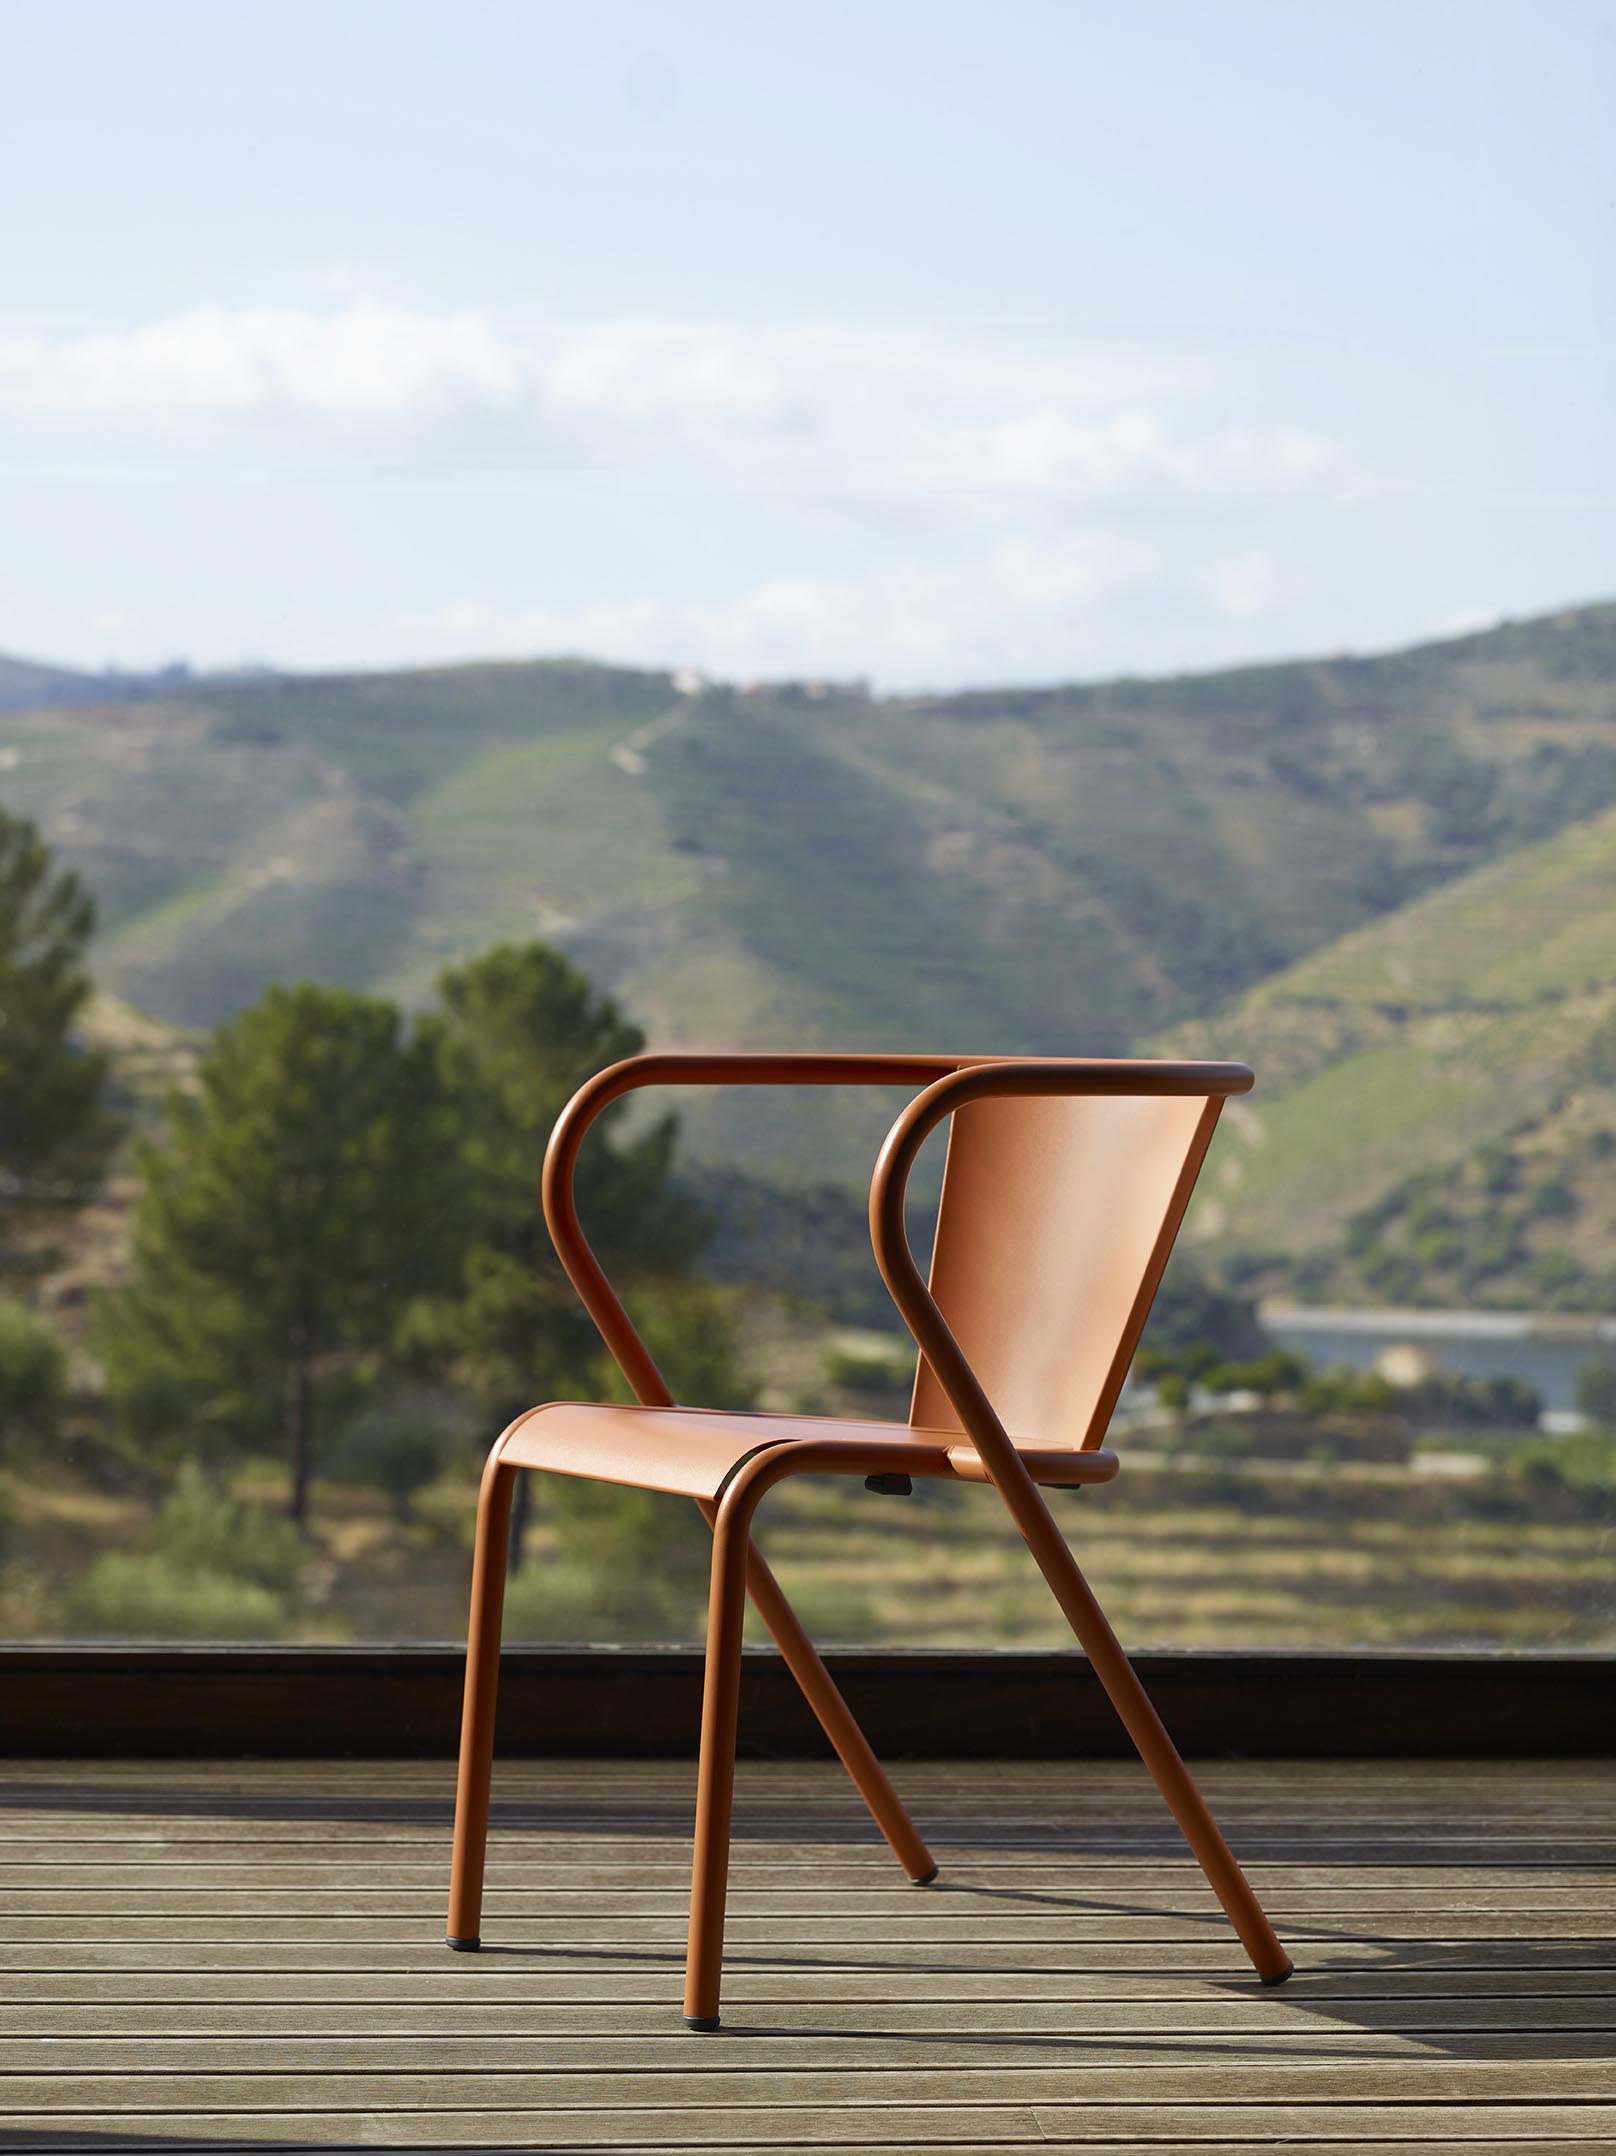 Chair 5008 - The Original Portuguese Chair